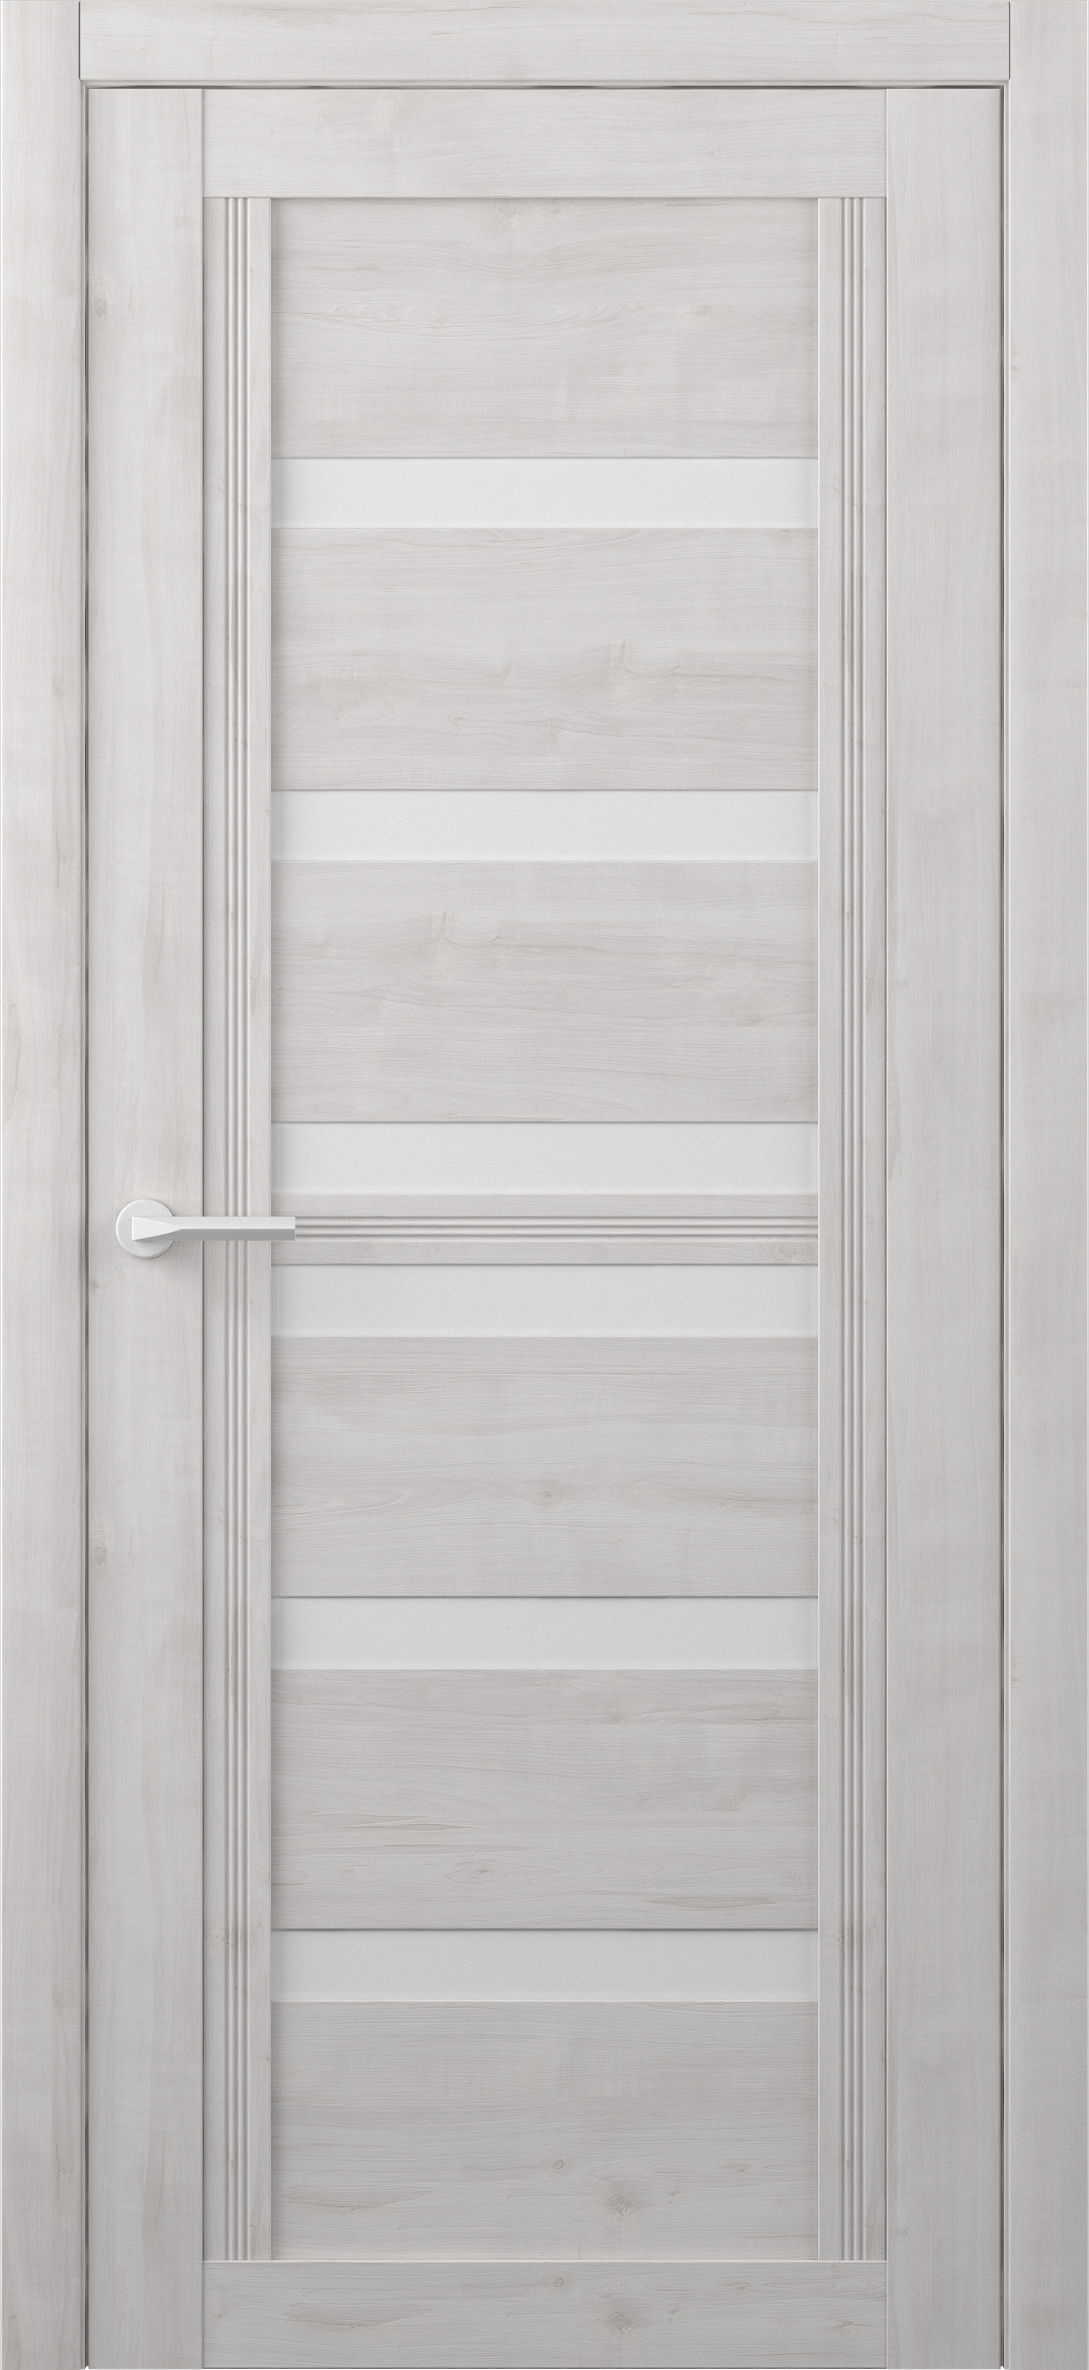 межкомнатная дверь Альберо  модель МИССУРИ покрытие Soft Touch  от NEVADOOR Магазин дверей